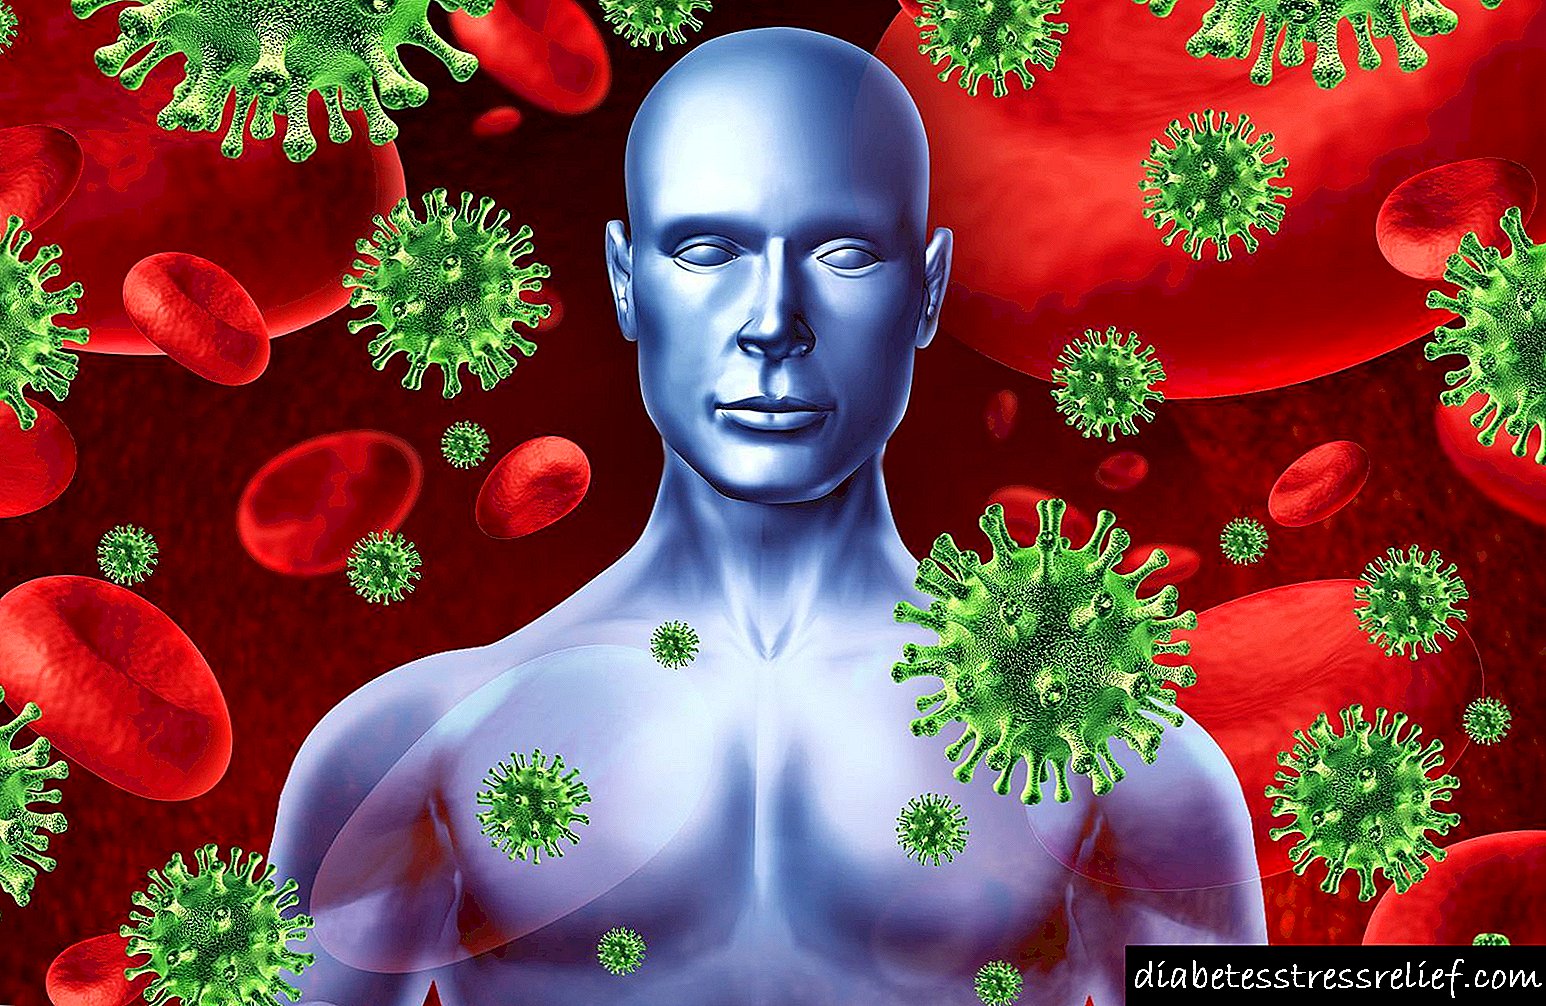 Поражения иммунной системы. Инфекционнныеза болевания. Вирусы в организме человека. Индефиционые заболевание.